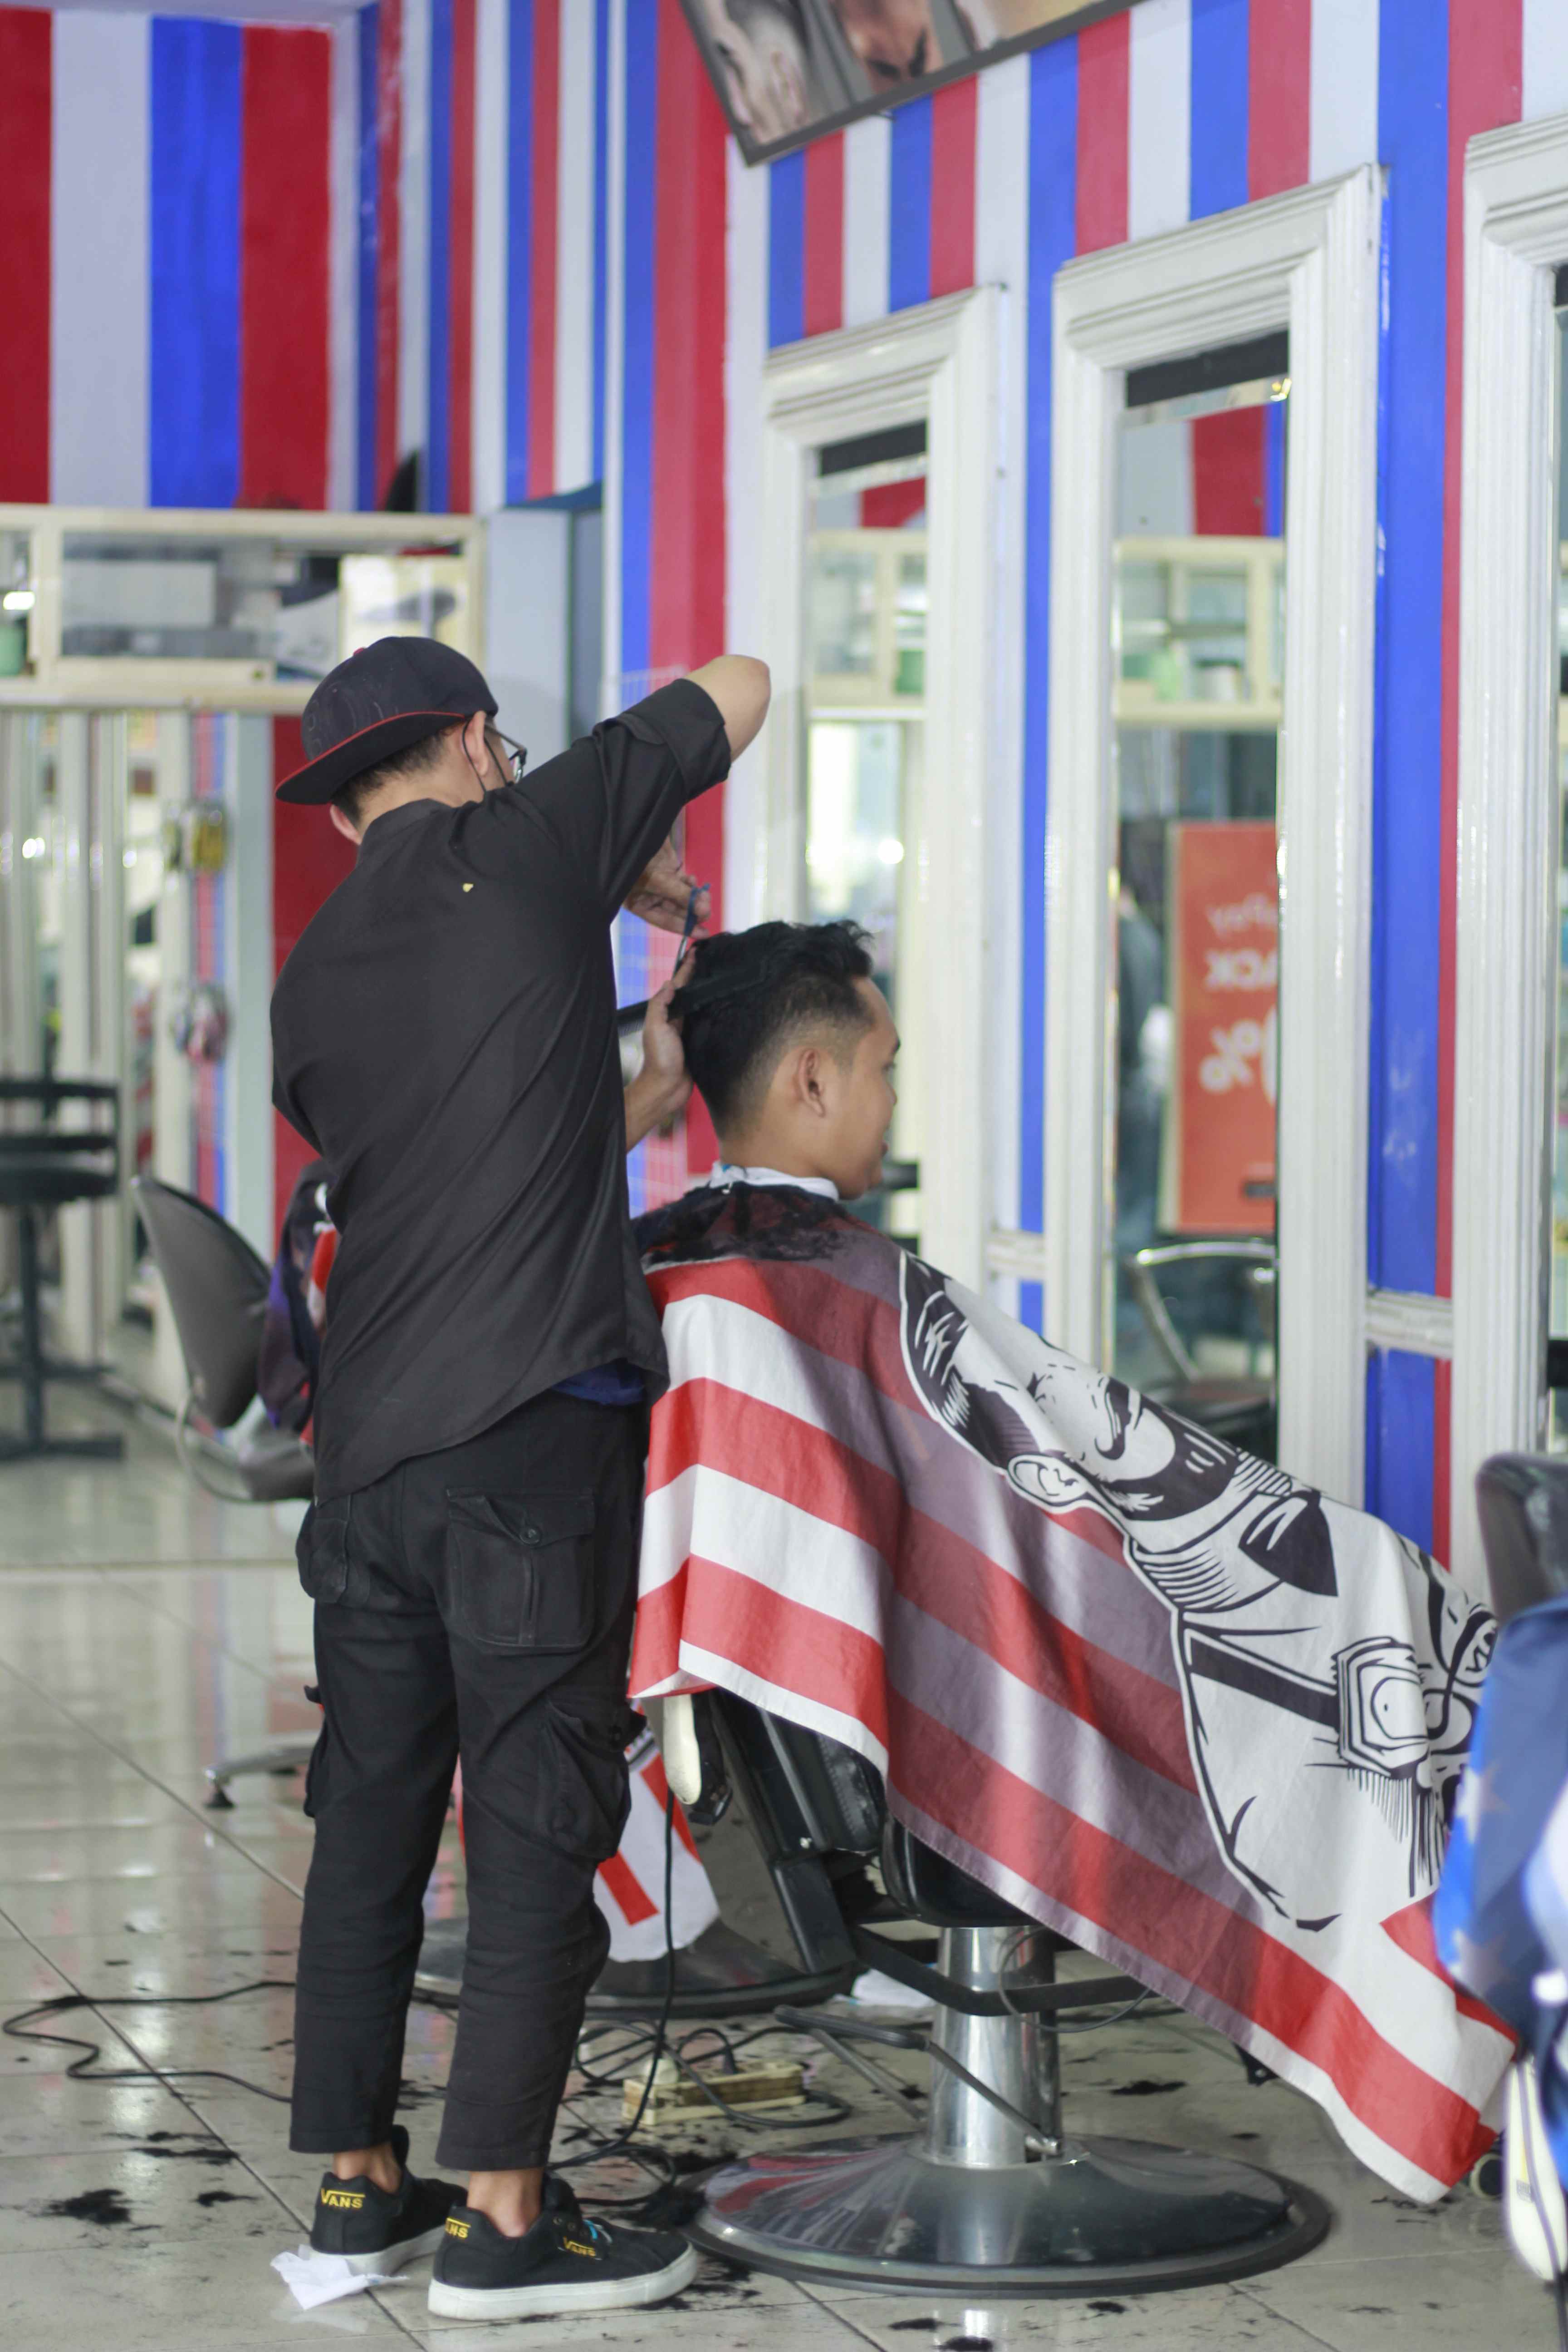 Tempat Barbershop Di Kelurahan Arjosari Profesional